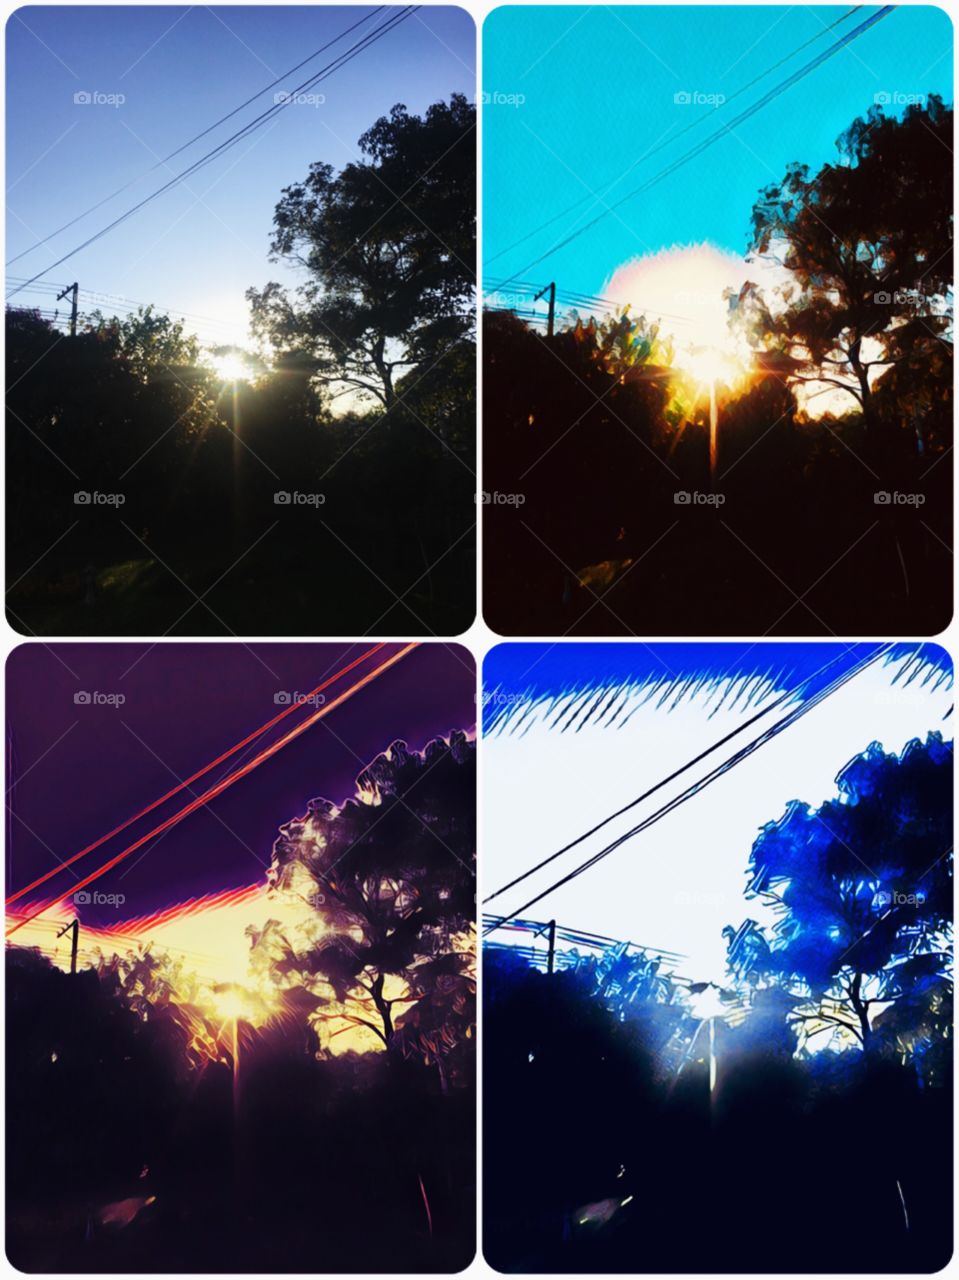 🎨 4 cores do #amanhecer. O #sol se esconde / aparece / resplandece!
☀️ #natureza #paisagem #fotografia #árvores #céu #cores